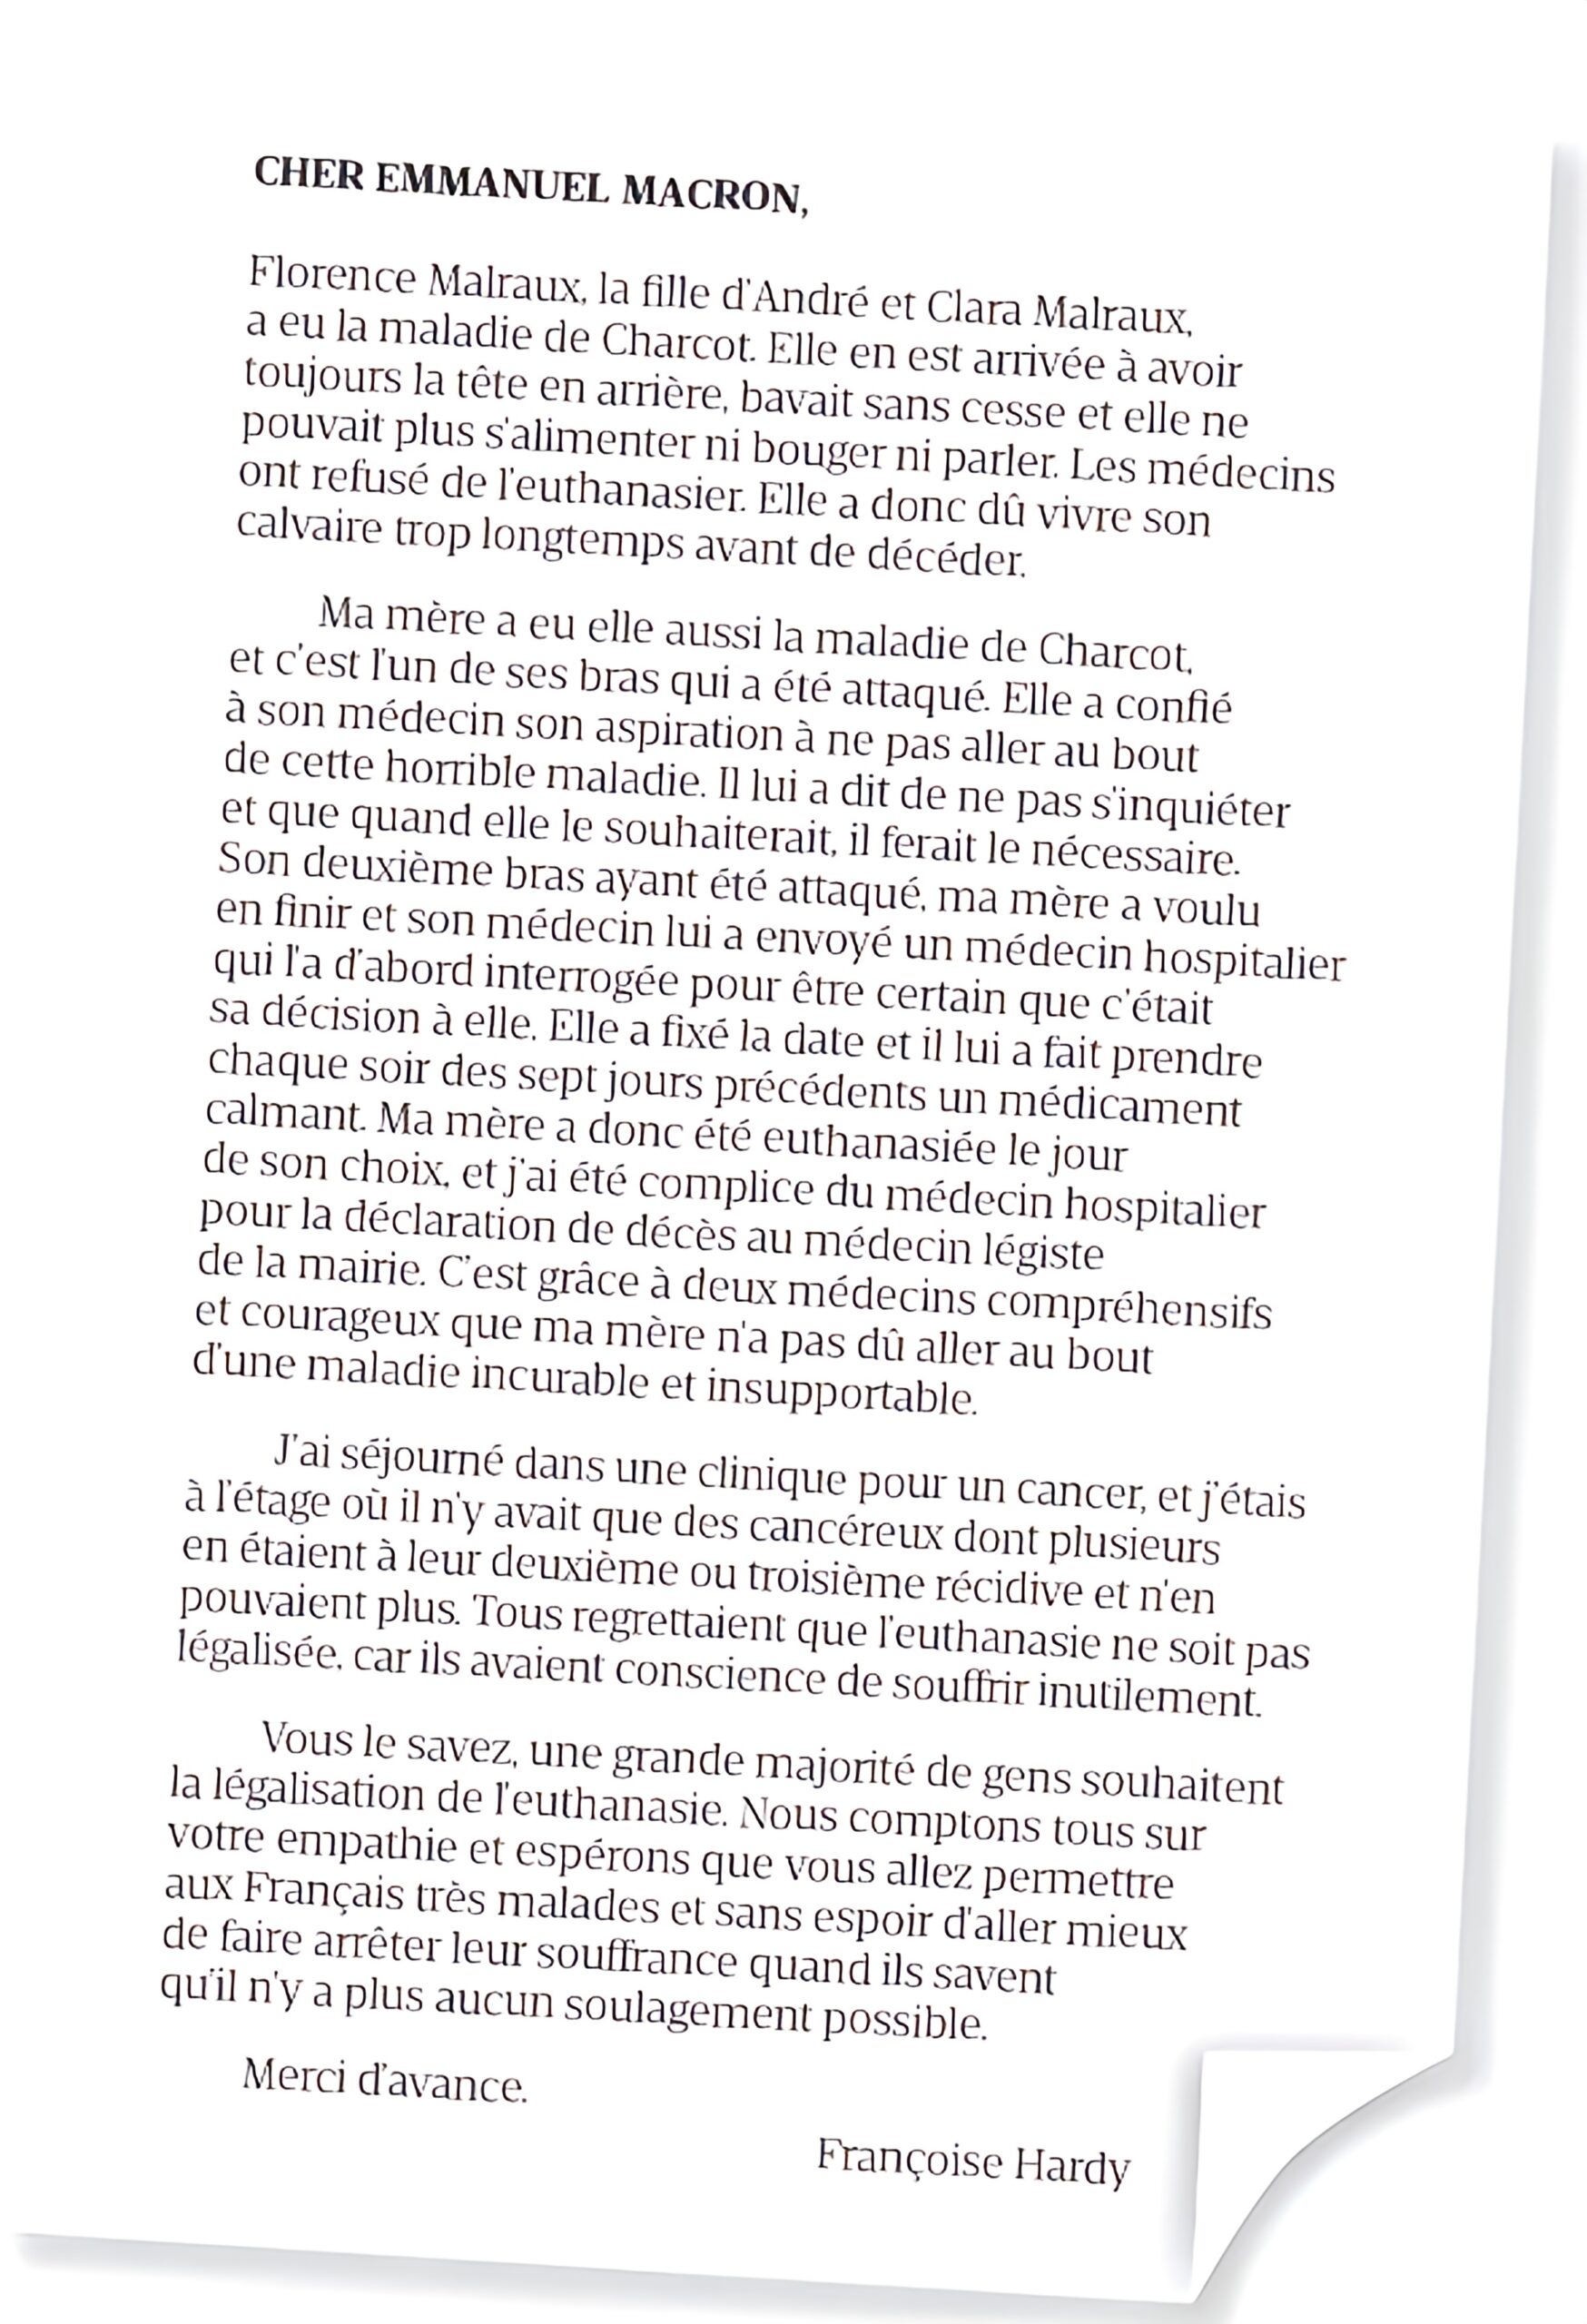 Fin de vie : La lettre poignante de Françoise Hardy à Emmanuel Macron.  - lettre image enhancer scaled